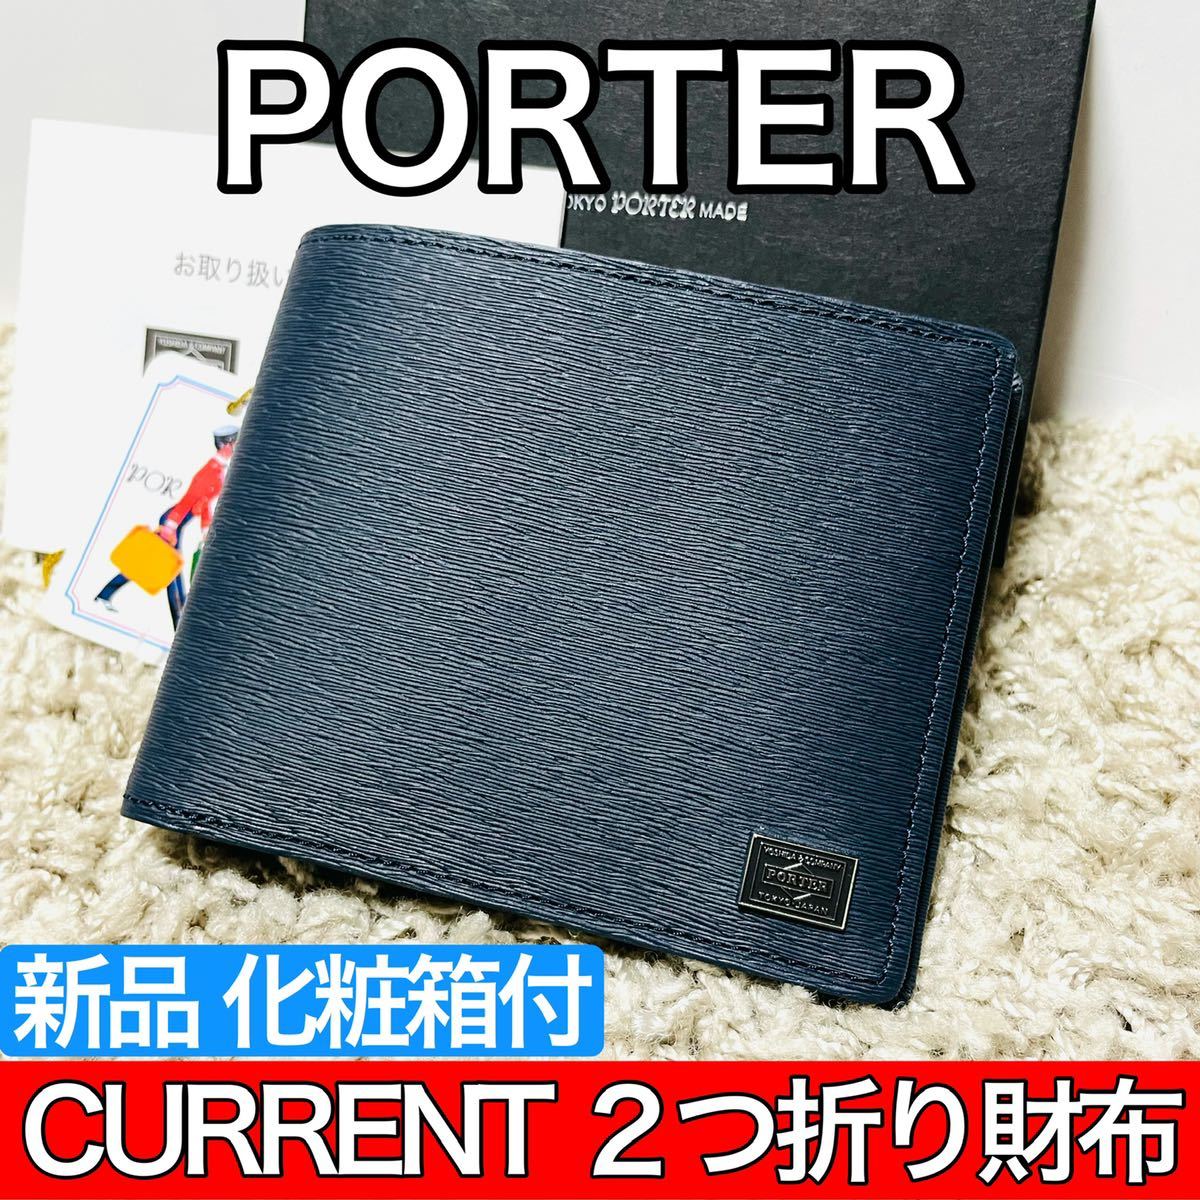 本物保証人気SALE PORTER - 吉田カバン ポーター PORTER 二つ折り財布